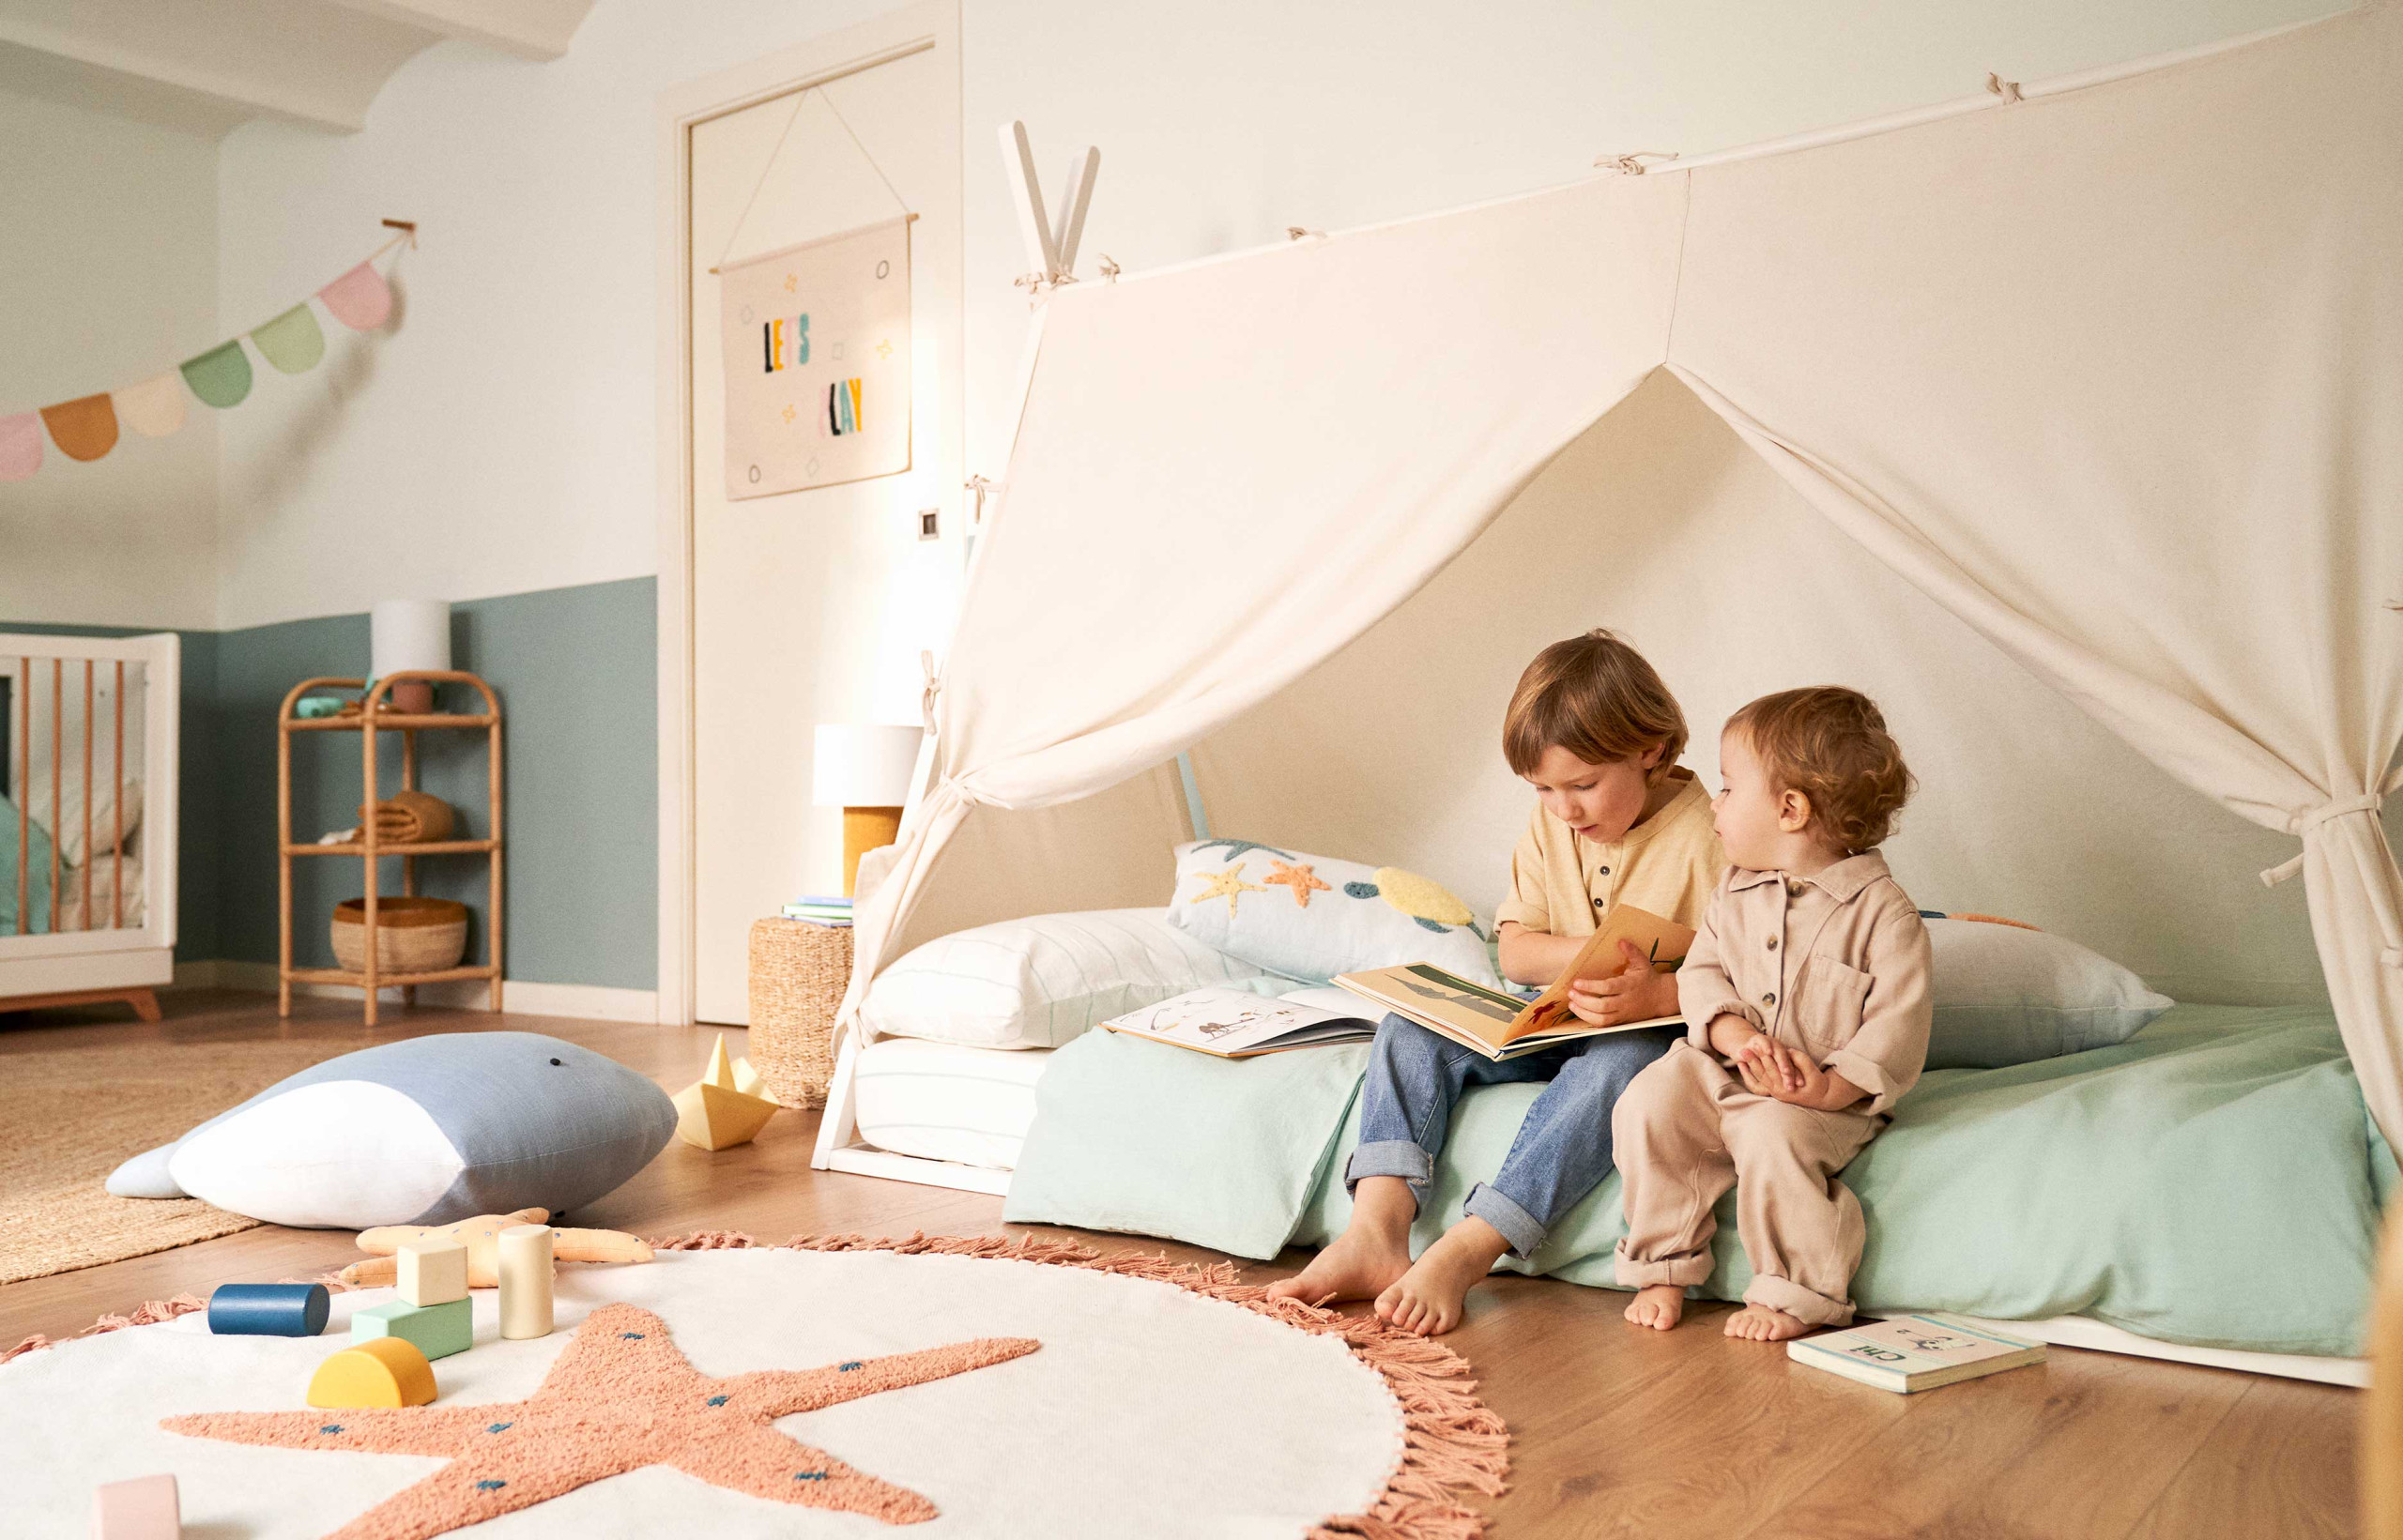 Meubles pour enfants : le mobilier Montessori n'existe pas ! - IDEAT